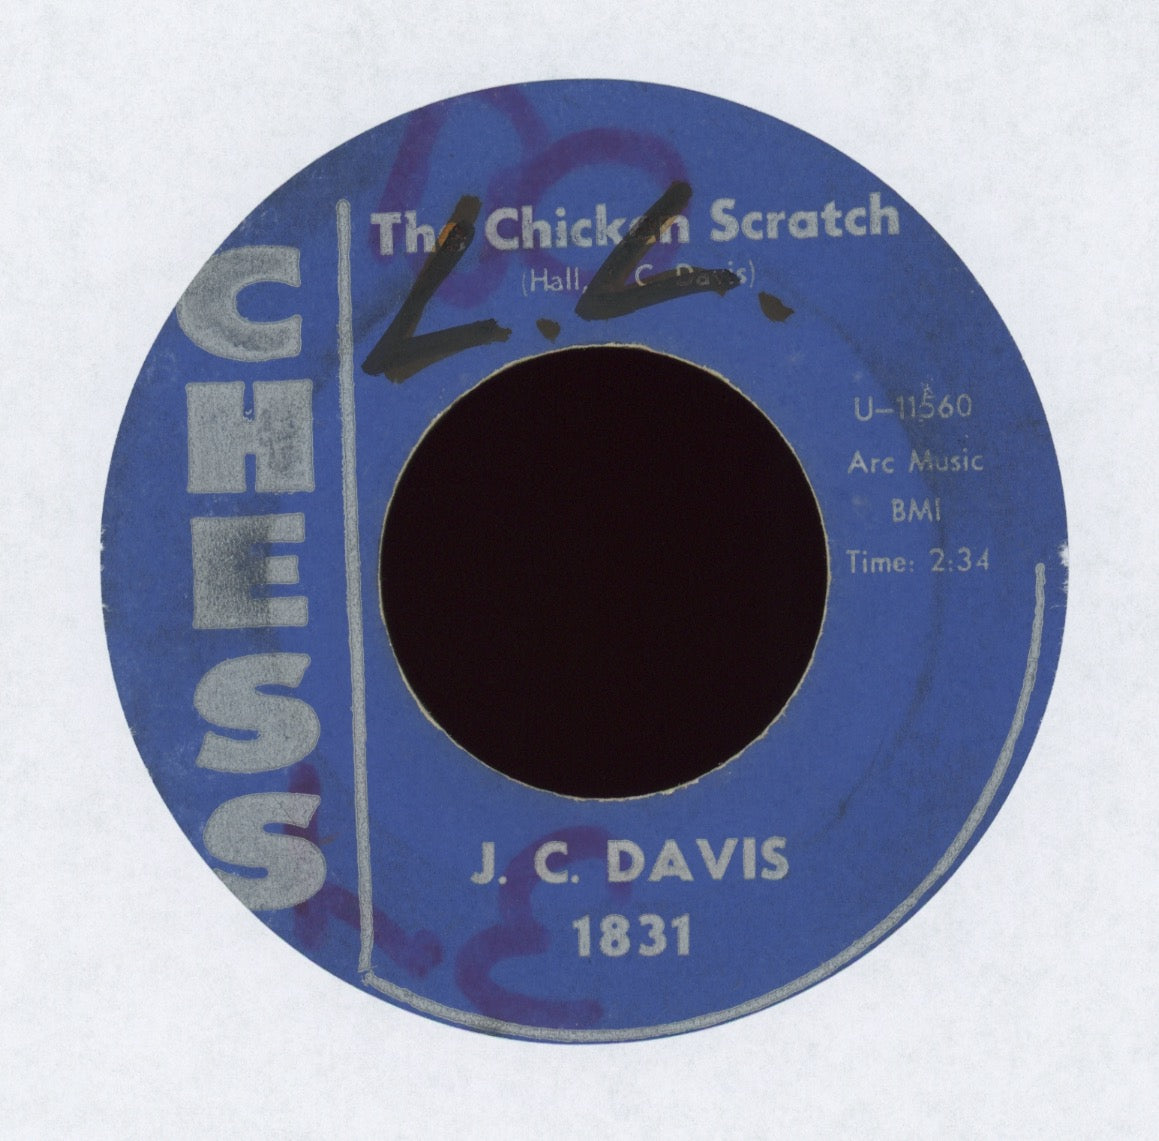 J.C. Davis - The Chicken Scratch on Chess